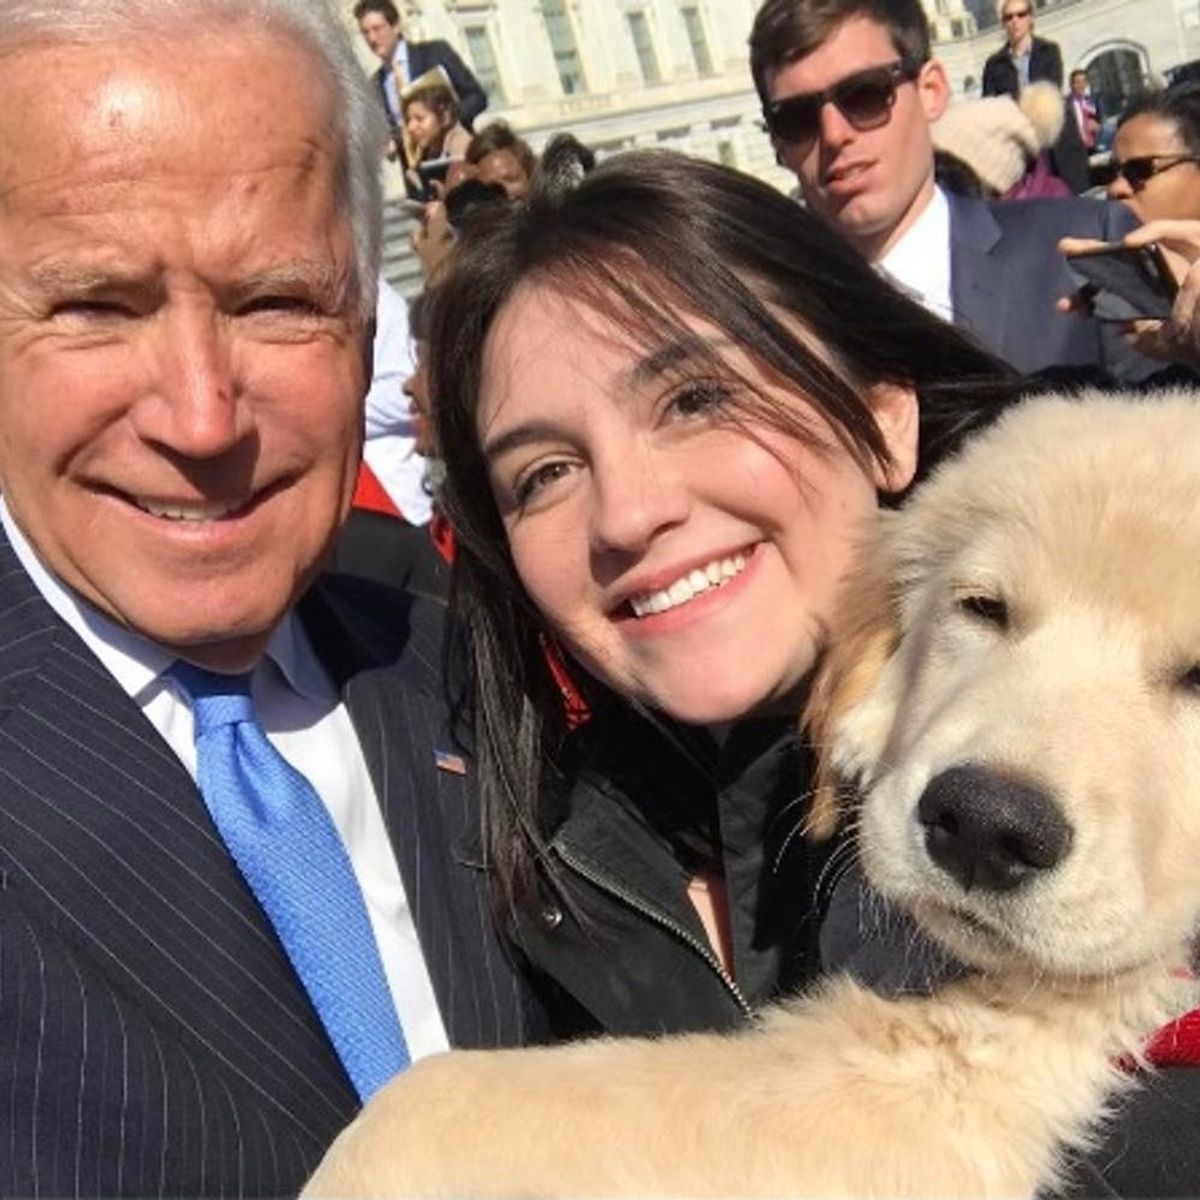 Human Joe Biden Meets Puppy Biden and OMG, the Cuteness!